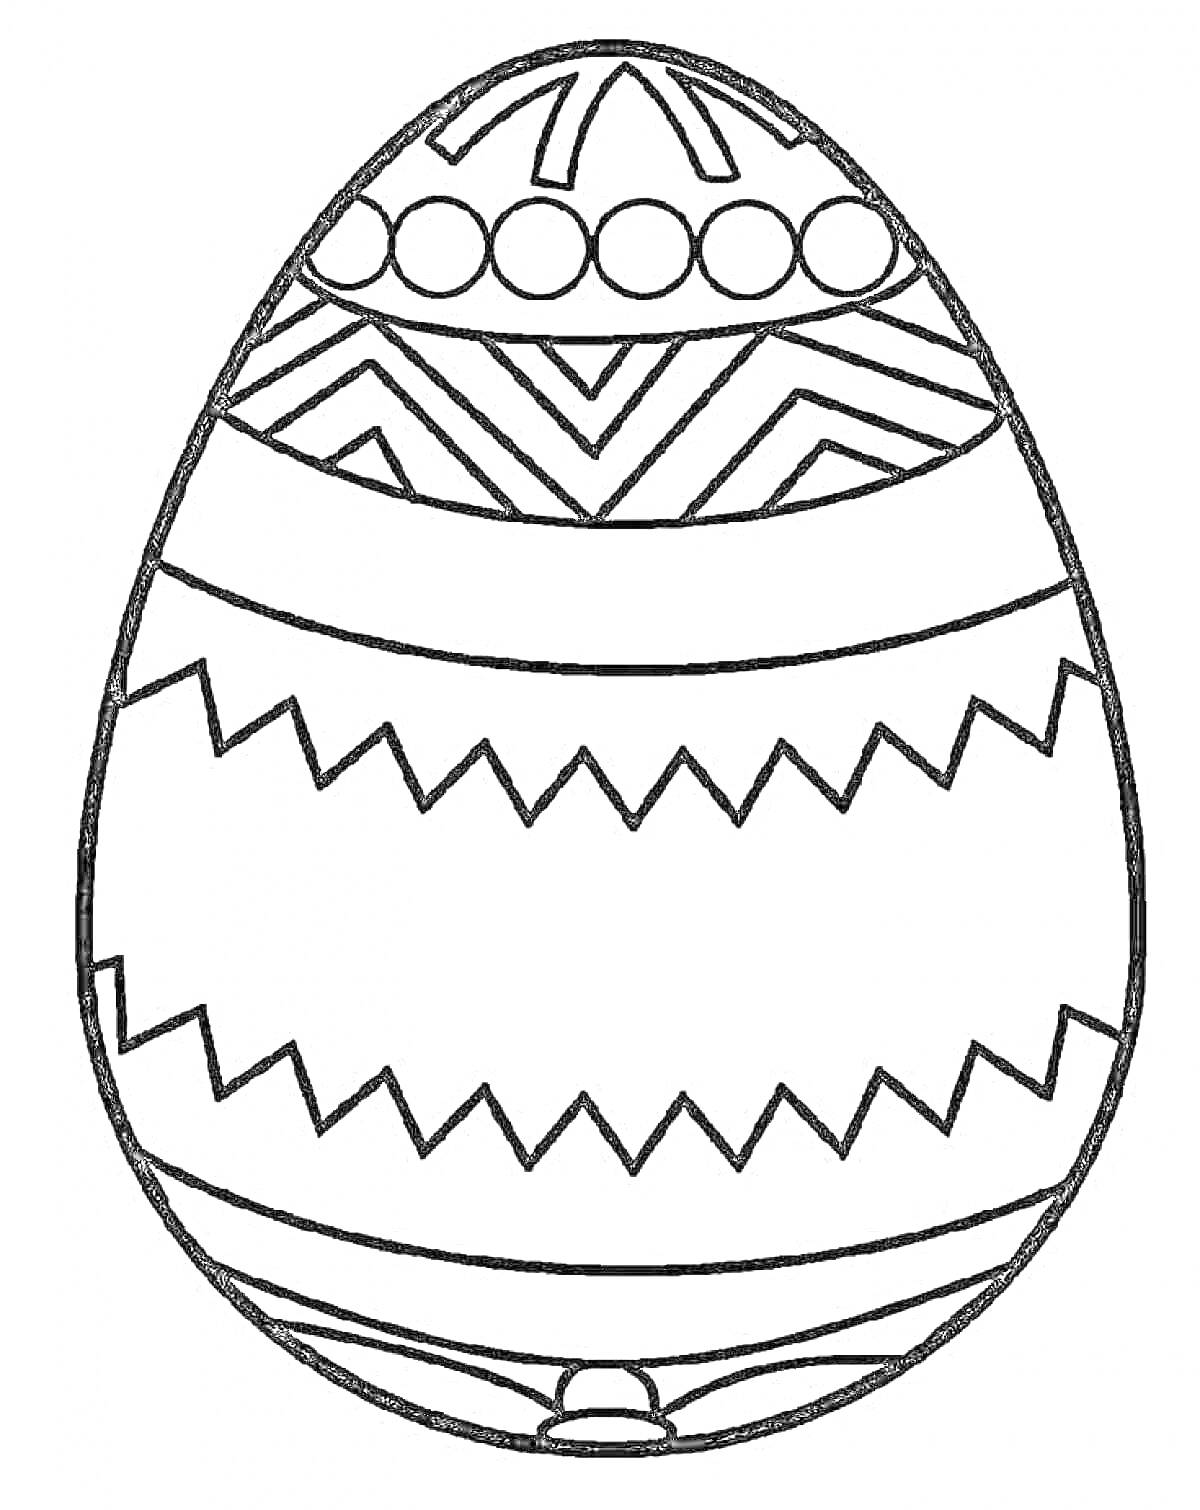 Раскраска Праздничное пасхальное яйцо с геометрическими узорами, кругами и зигзагами